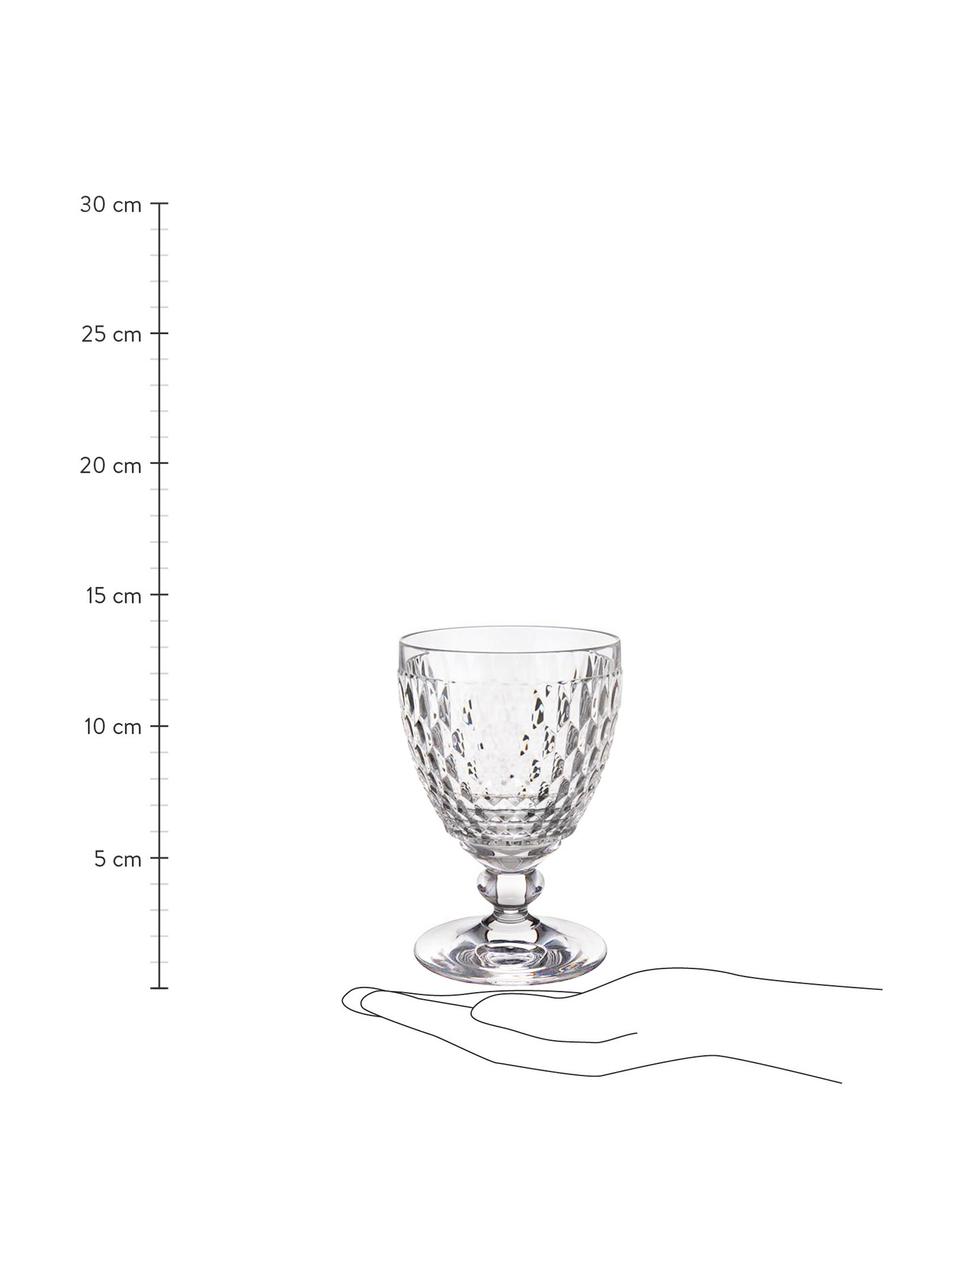 Bicchiere in cristallo con rilievo Boston 4 pz, Cristallo, Trasparente, Ø 10 x Alt. 14 cm, 350 ml